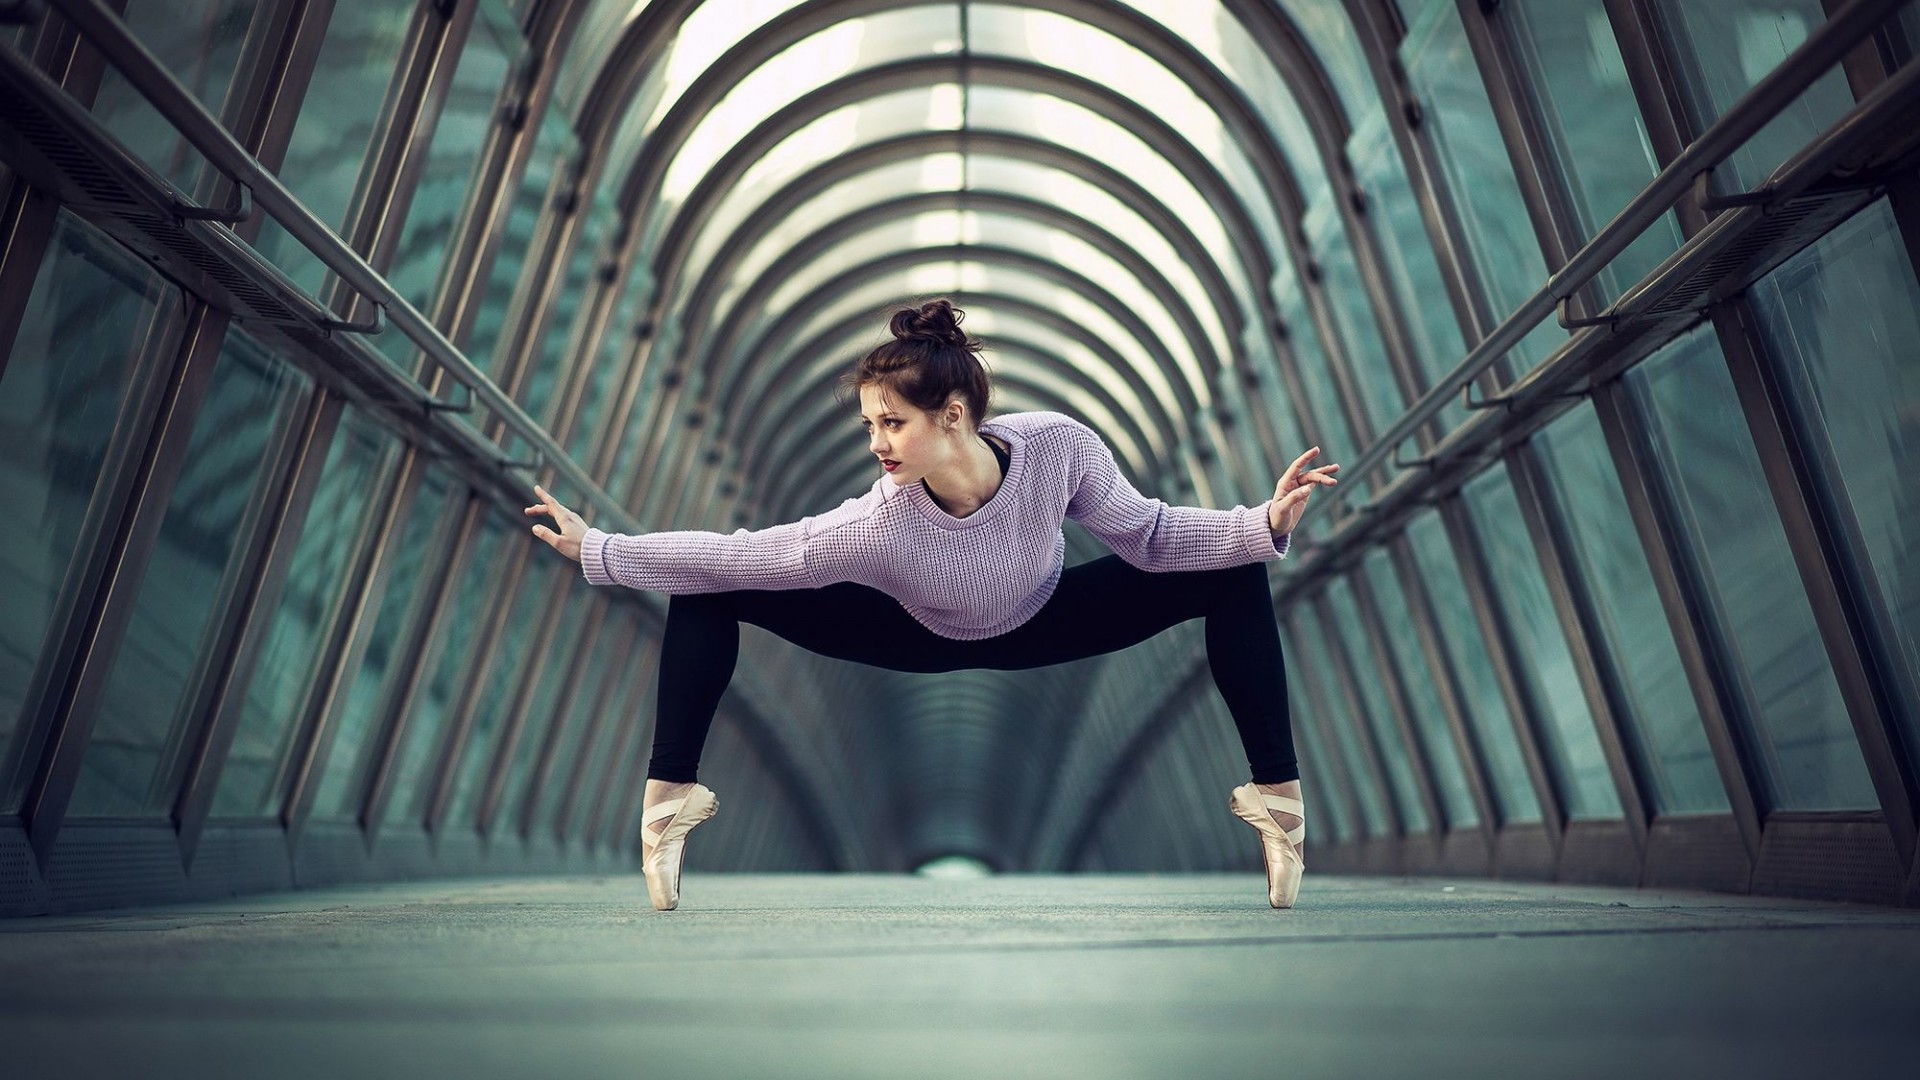 Ballet-Fitness-Girl-Exercise-Wallpaper.jpg